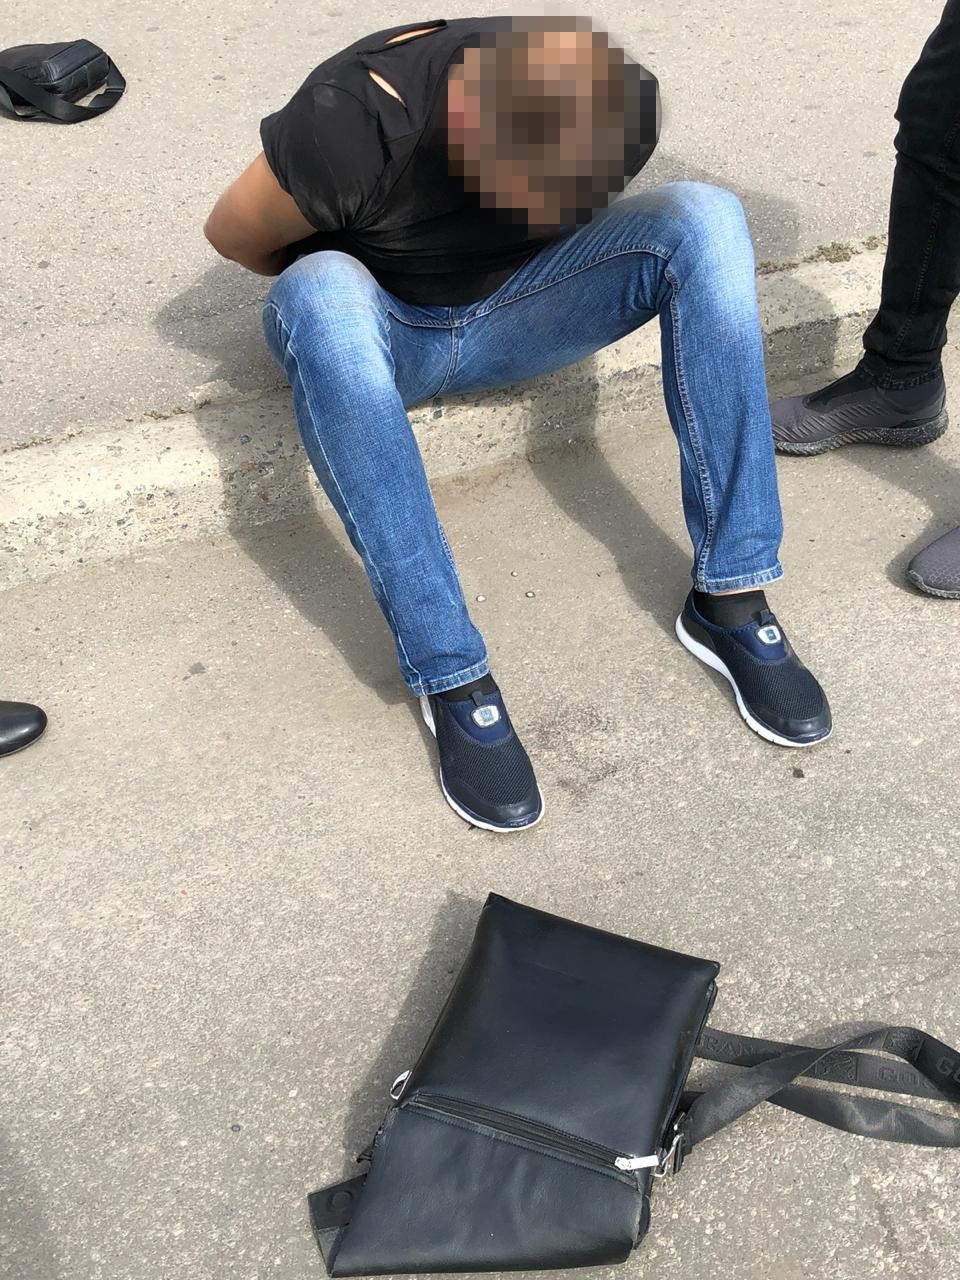 Співробітники СБУ затримали на Харківщині учасників організованого угруповання, які тероризували місцевих підприємців, прикриваючись міською асоціацією ветеранів АТО